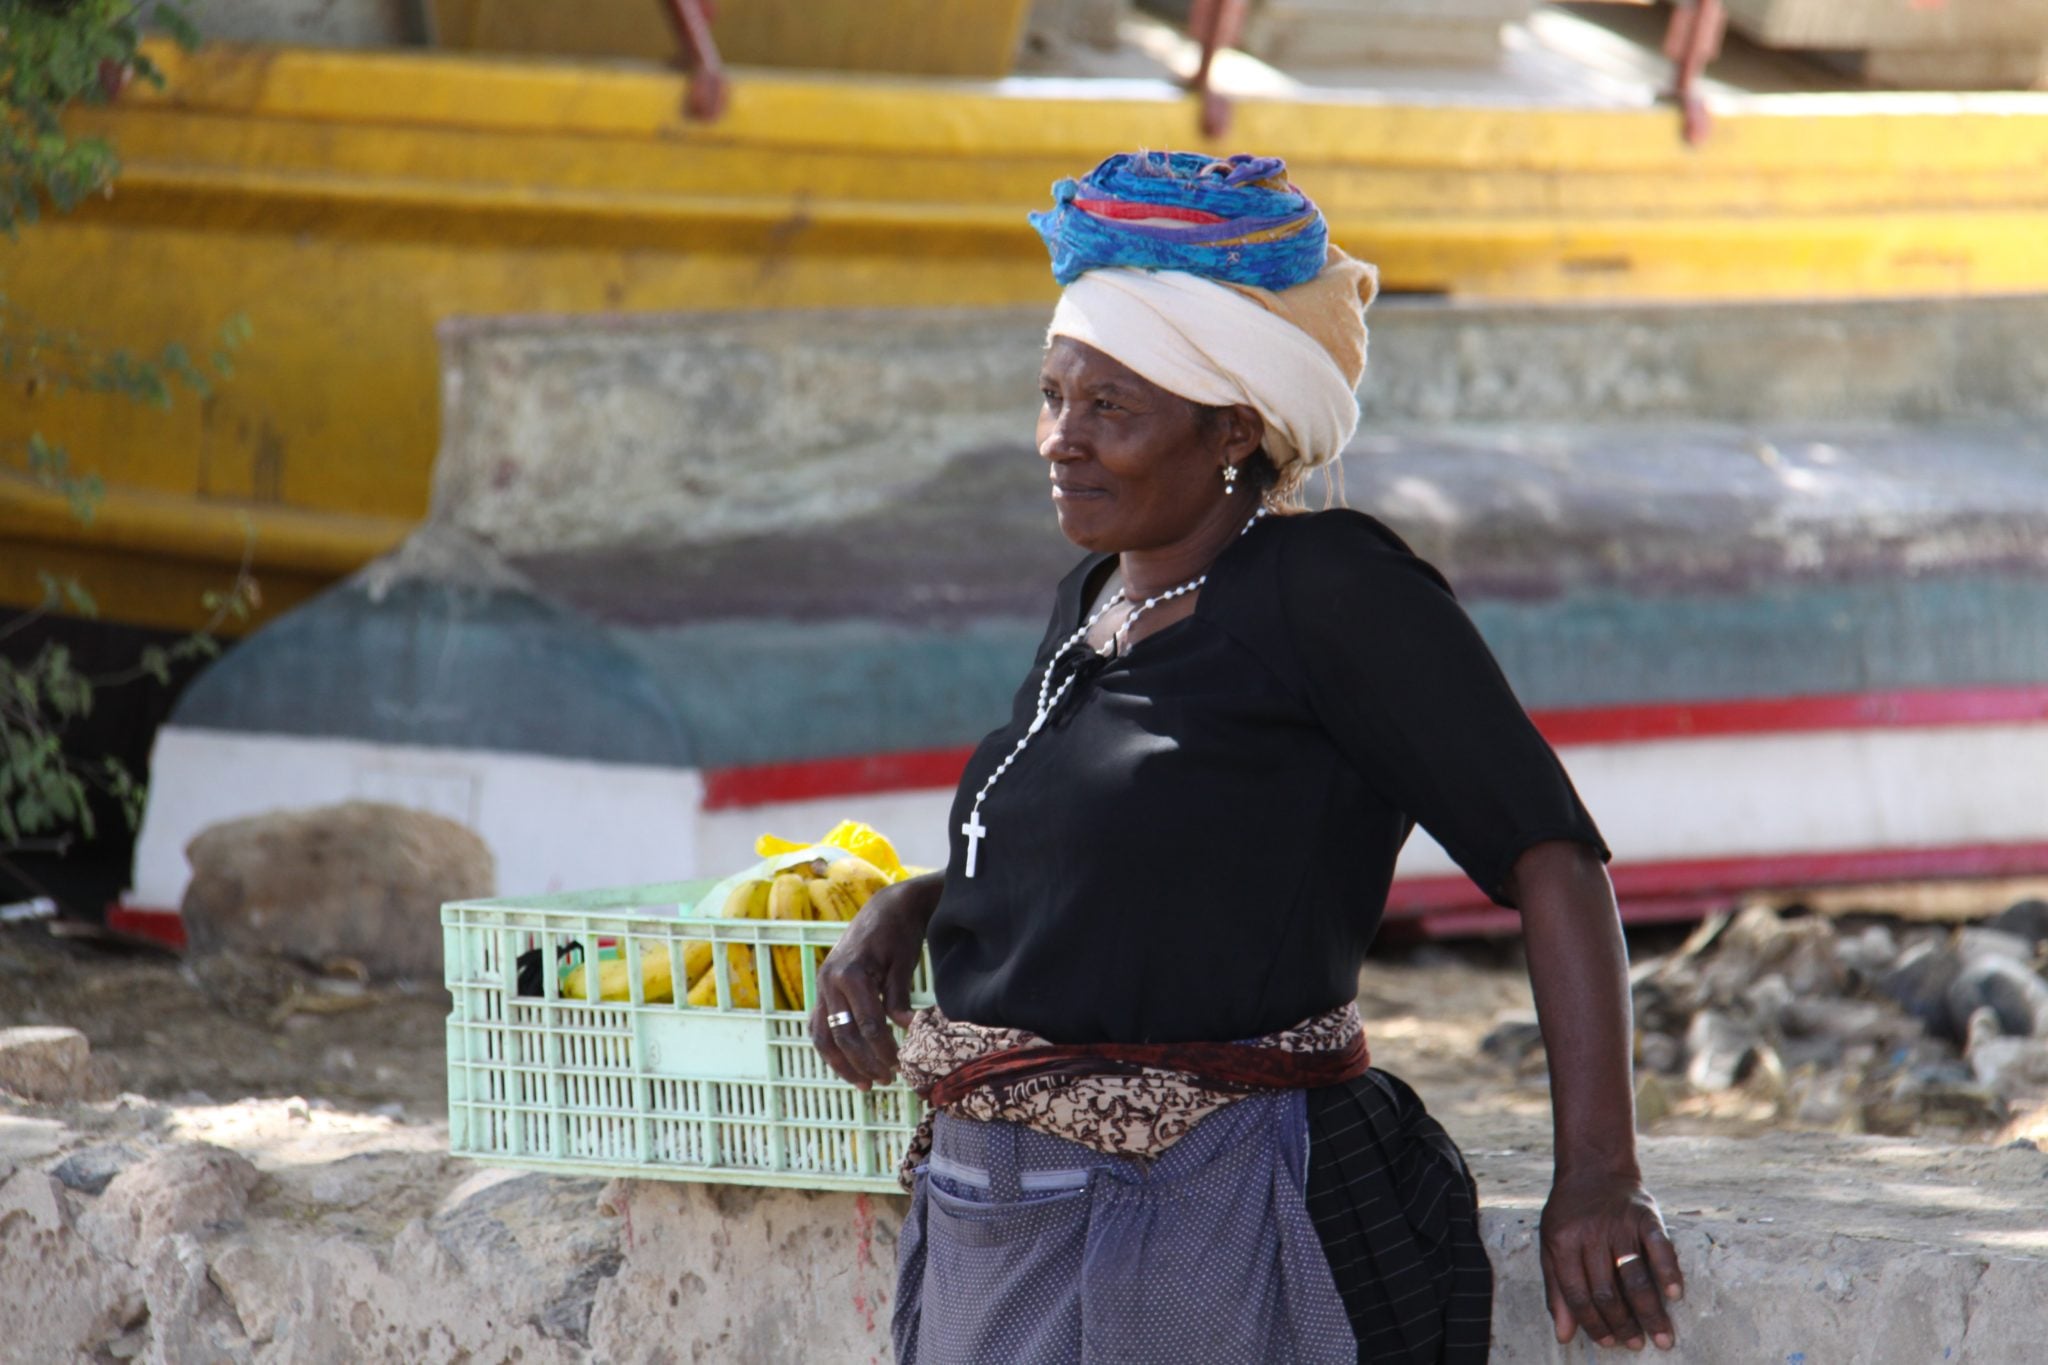 Sal Rei, Boa Vista, Republika Zielonego Przylądka, kobieta, sklep, sprzedaż, kobieta z koszem na głowie, tradycyjny strój, zielony przylądek